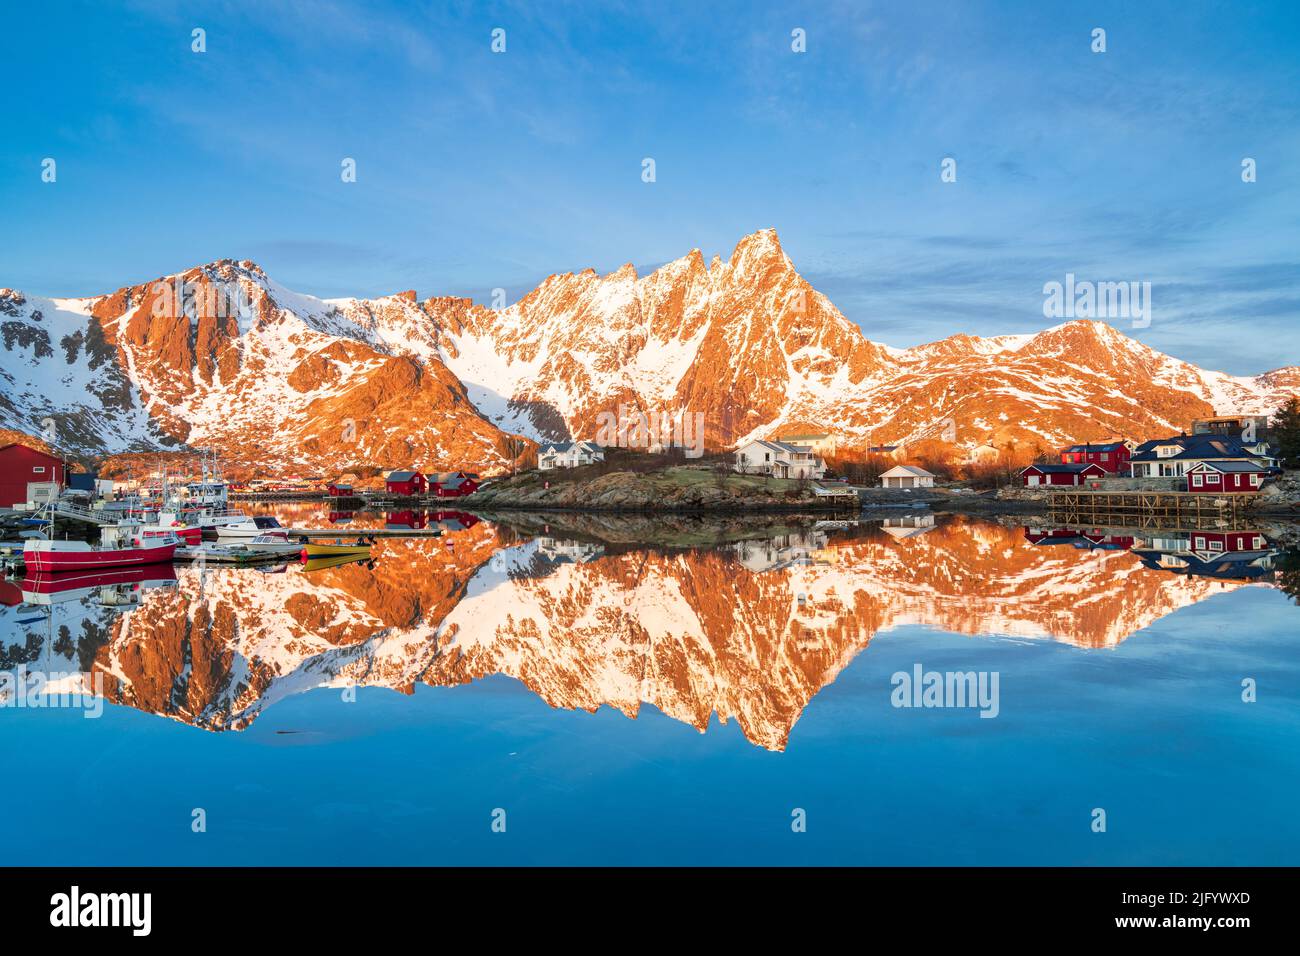 Montagne maestose e villaggio di pescatori che si riflettono nel mare freddo, Ballstad, Vestvagoy, Isole Lofoten, Norvegia, Scandinavia, Europa Foto Stock